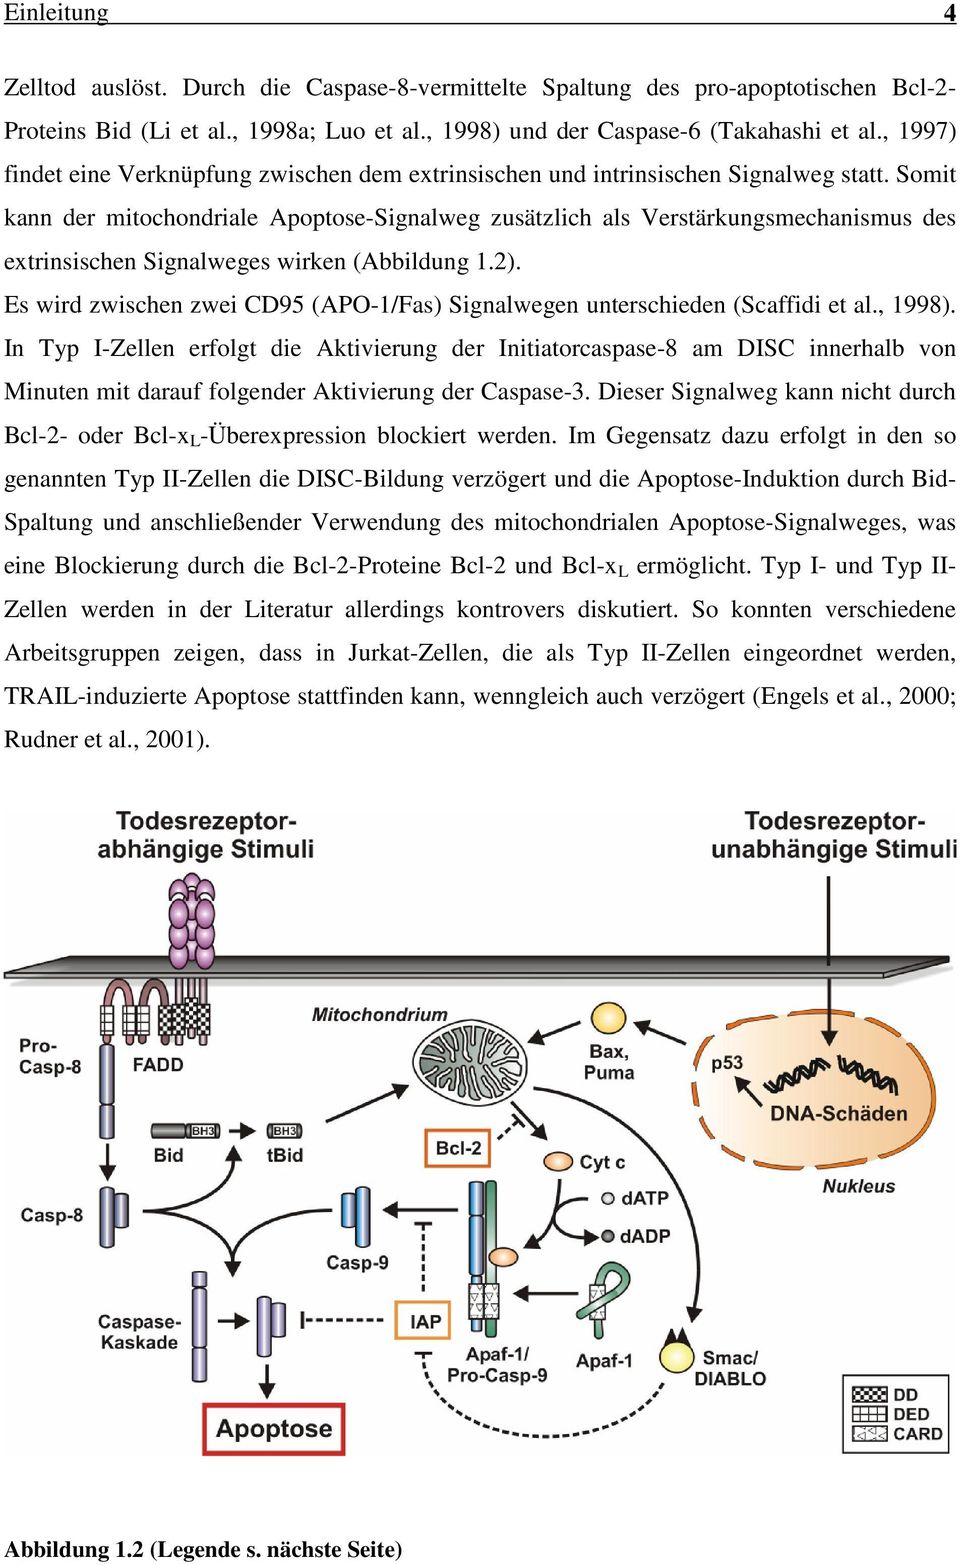 Somit kann der mitochondriale Apoptose-Signalweg zusätzlich als Verstärkungsmechanismus des extrinsischen Signalweges wirken (Abbildung 1.2).